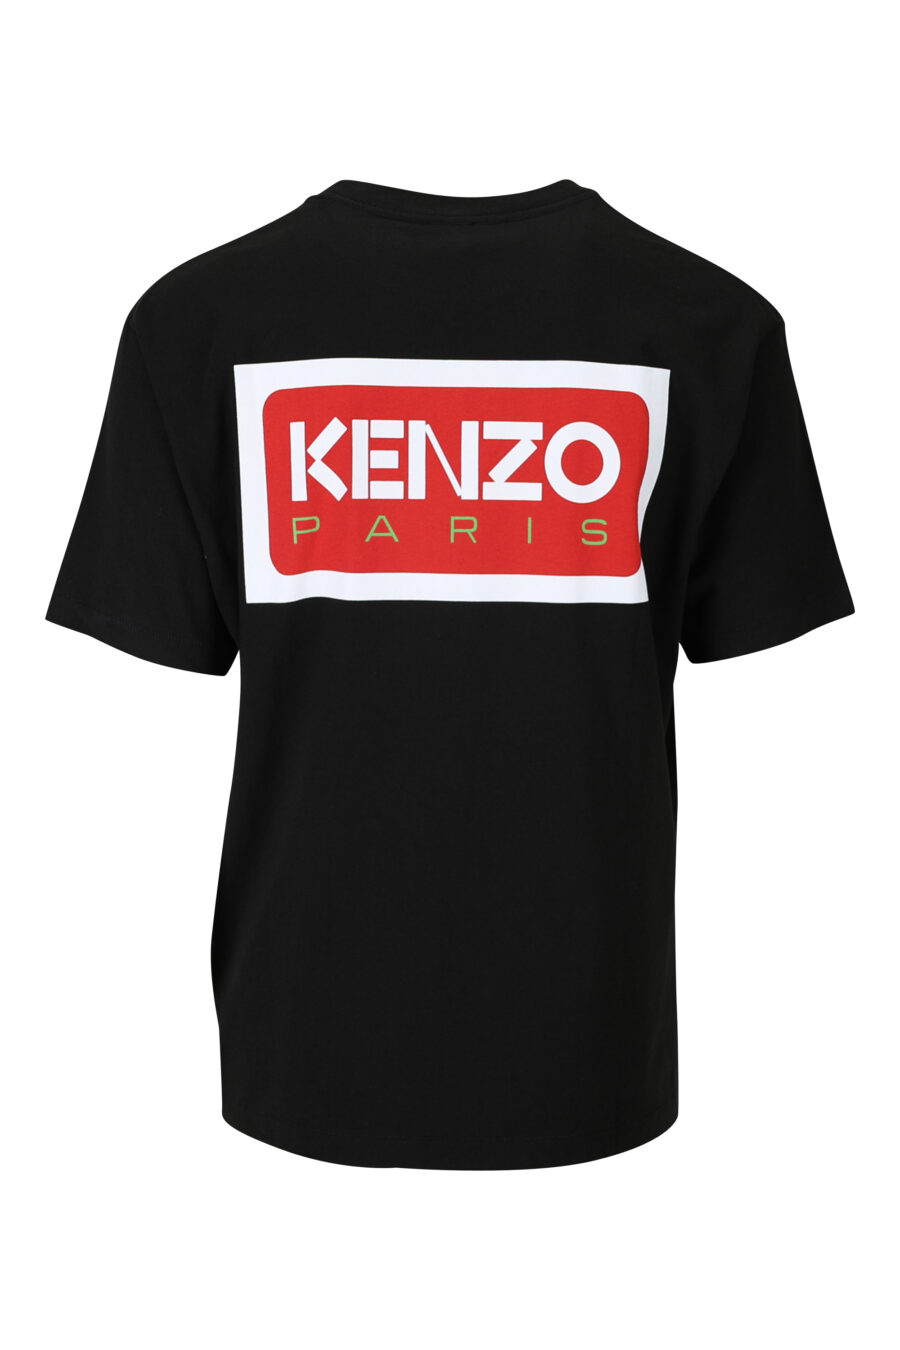 T-shirt noir avec petit logo "kenzo paris" - 3612230542990 1